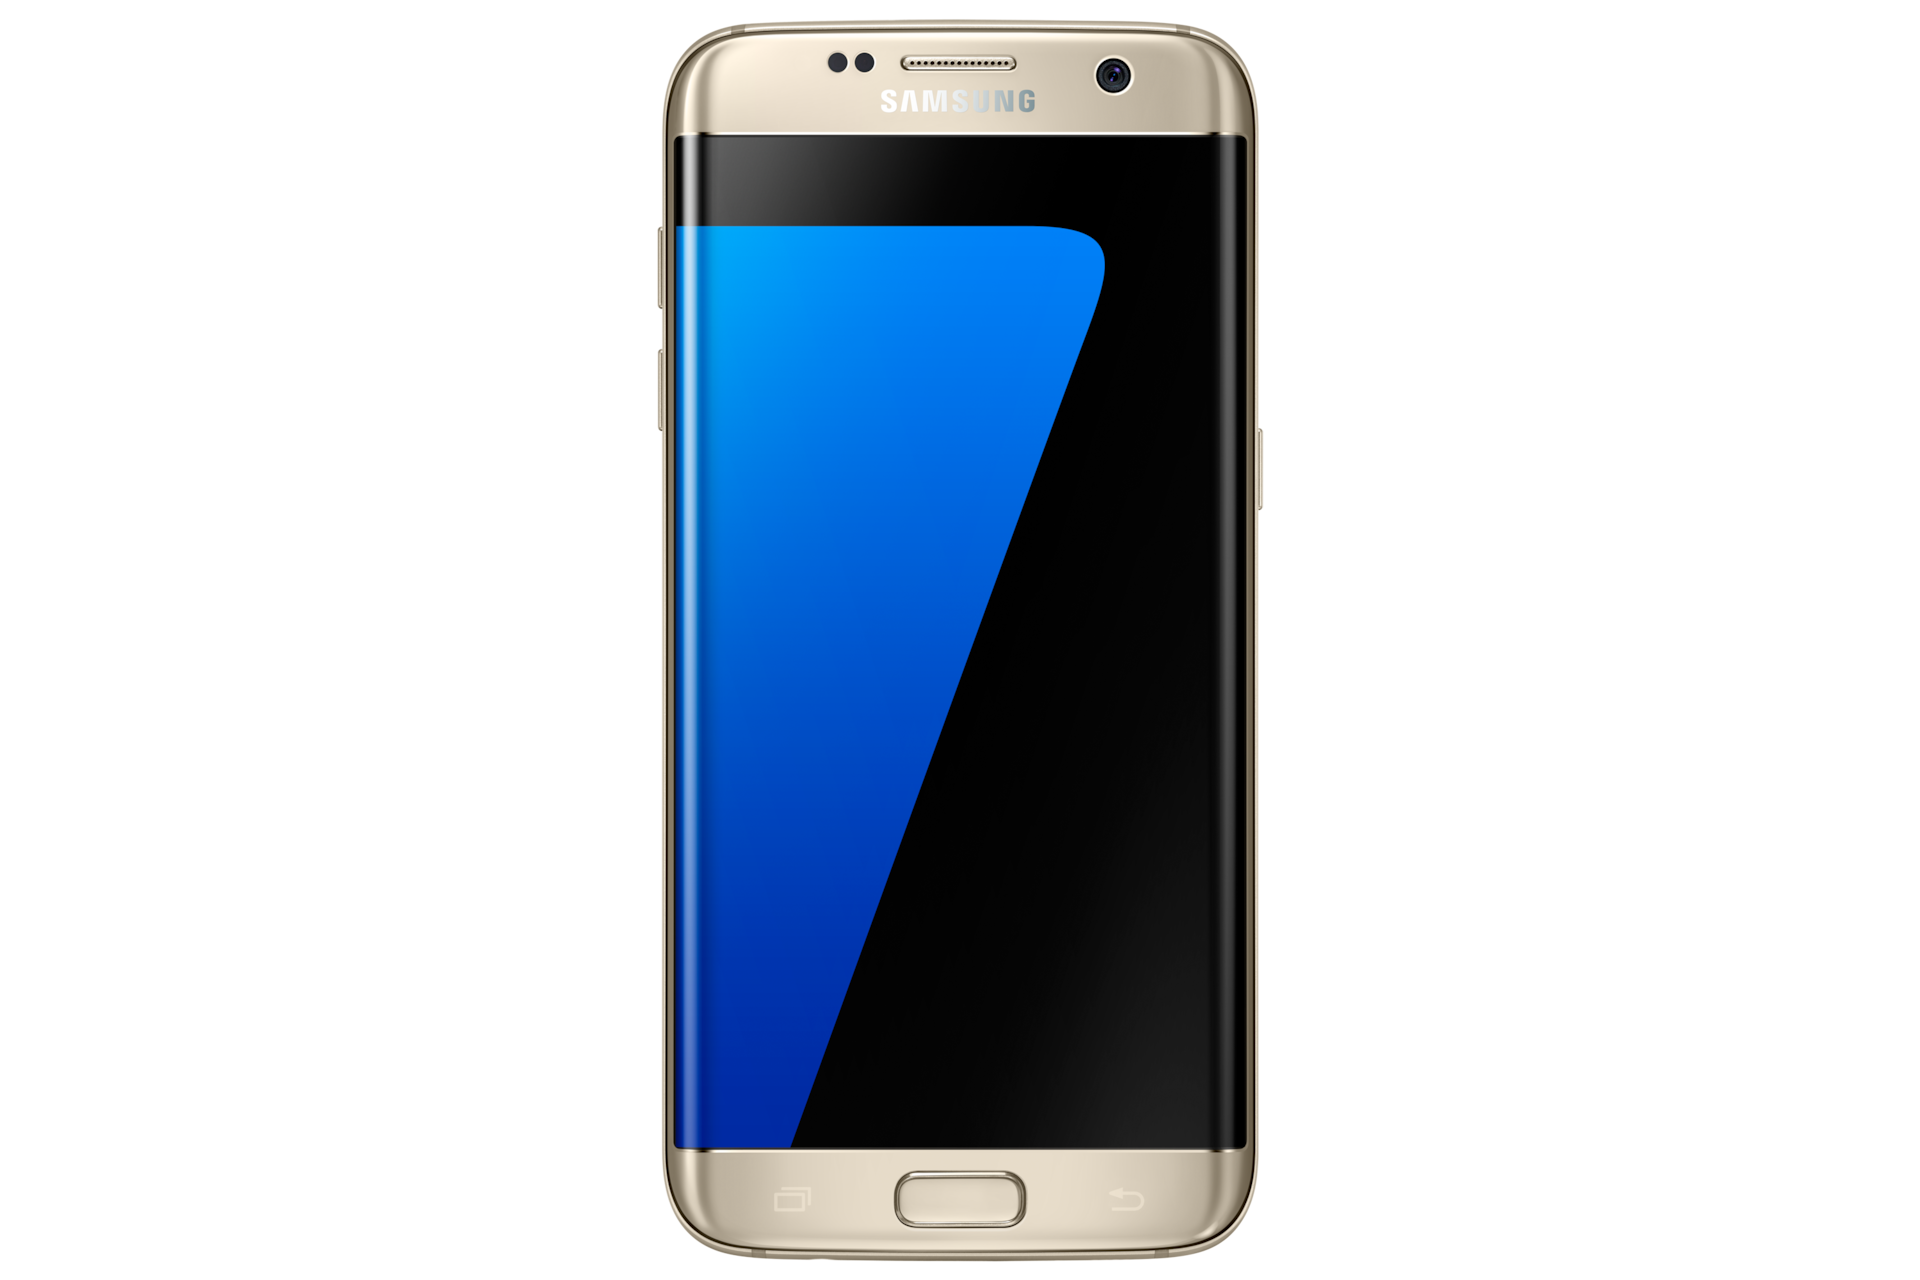 Samsung Galaxy S7 Edge G935FD Coral Blue